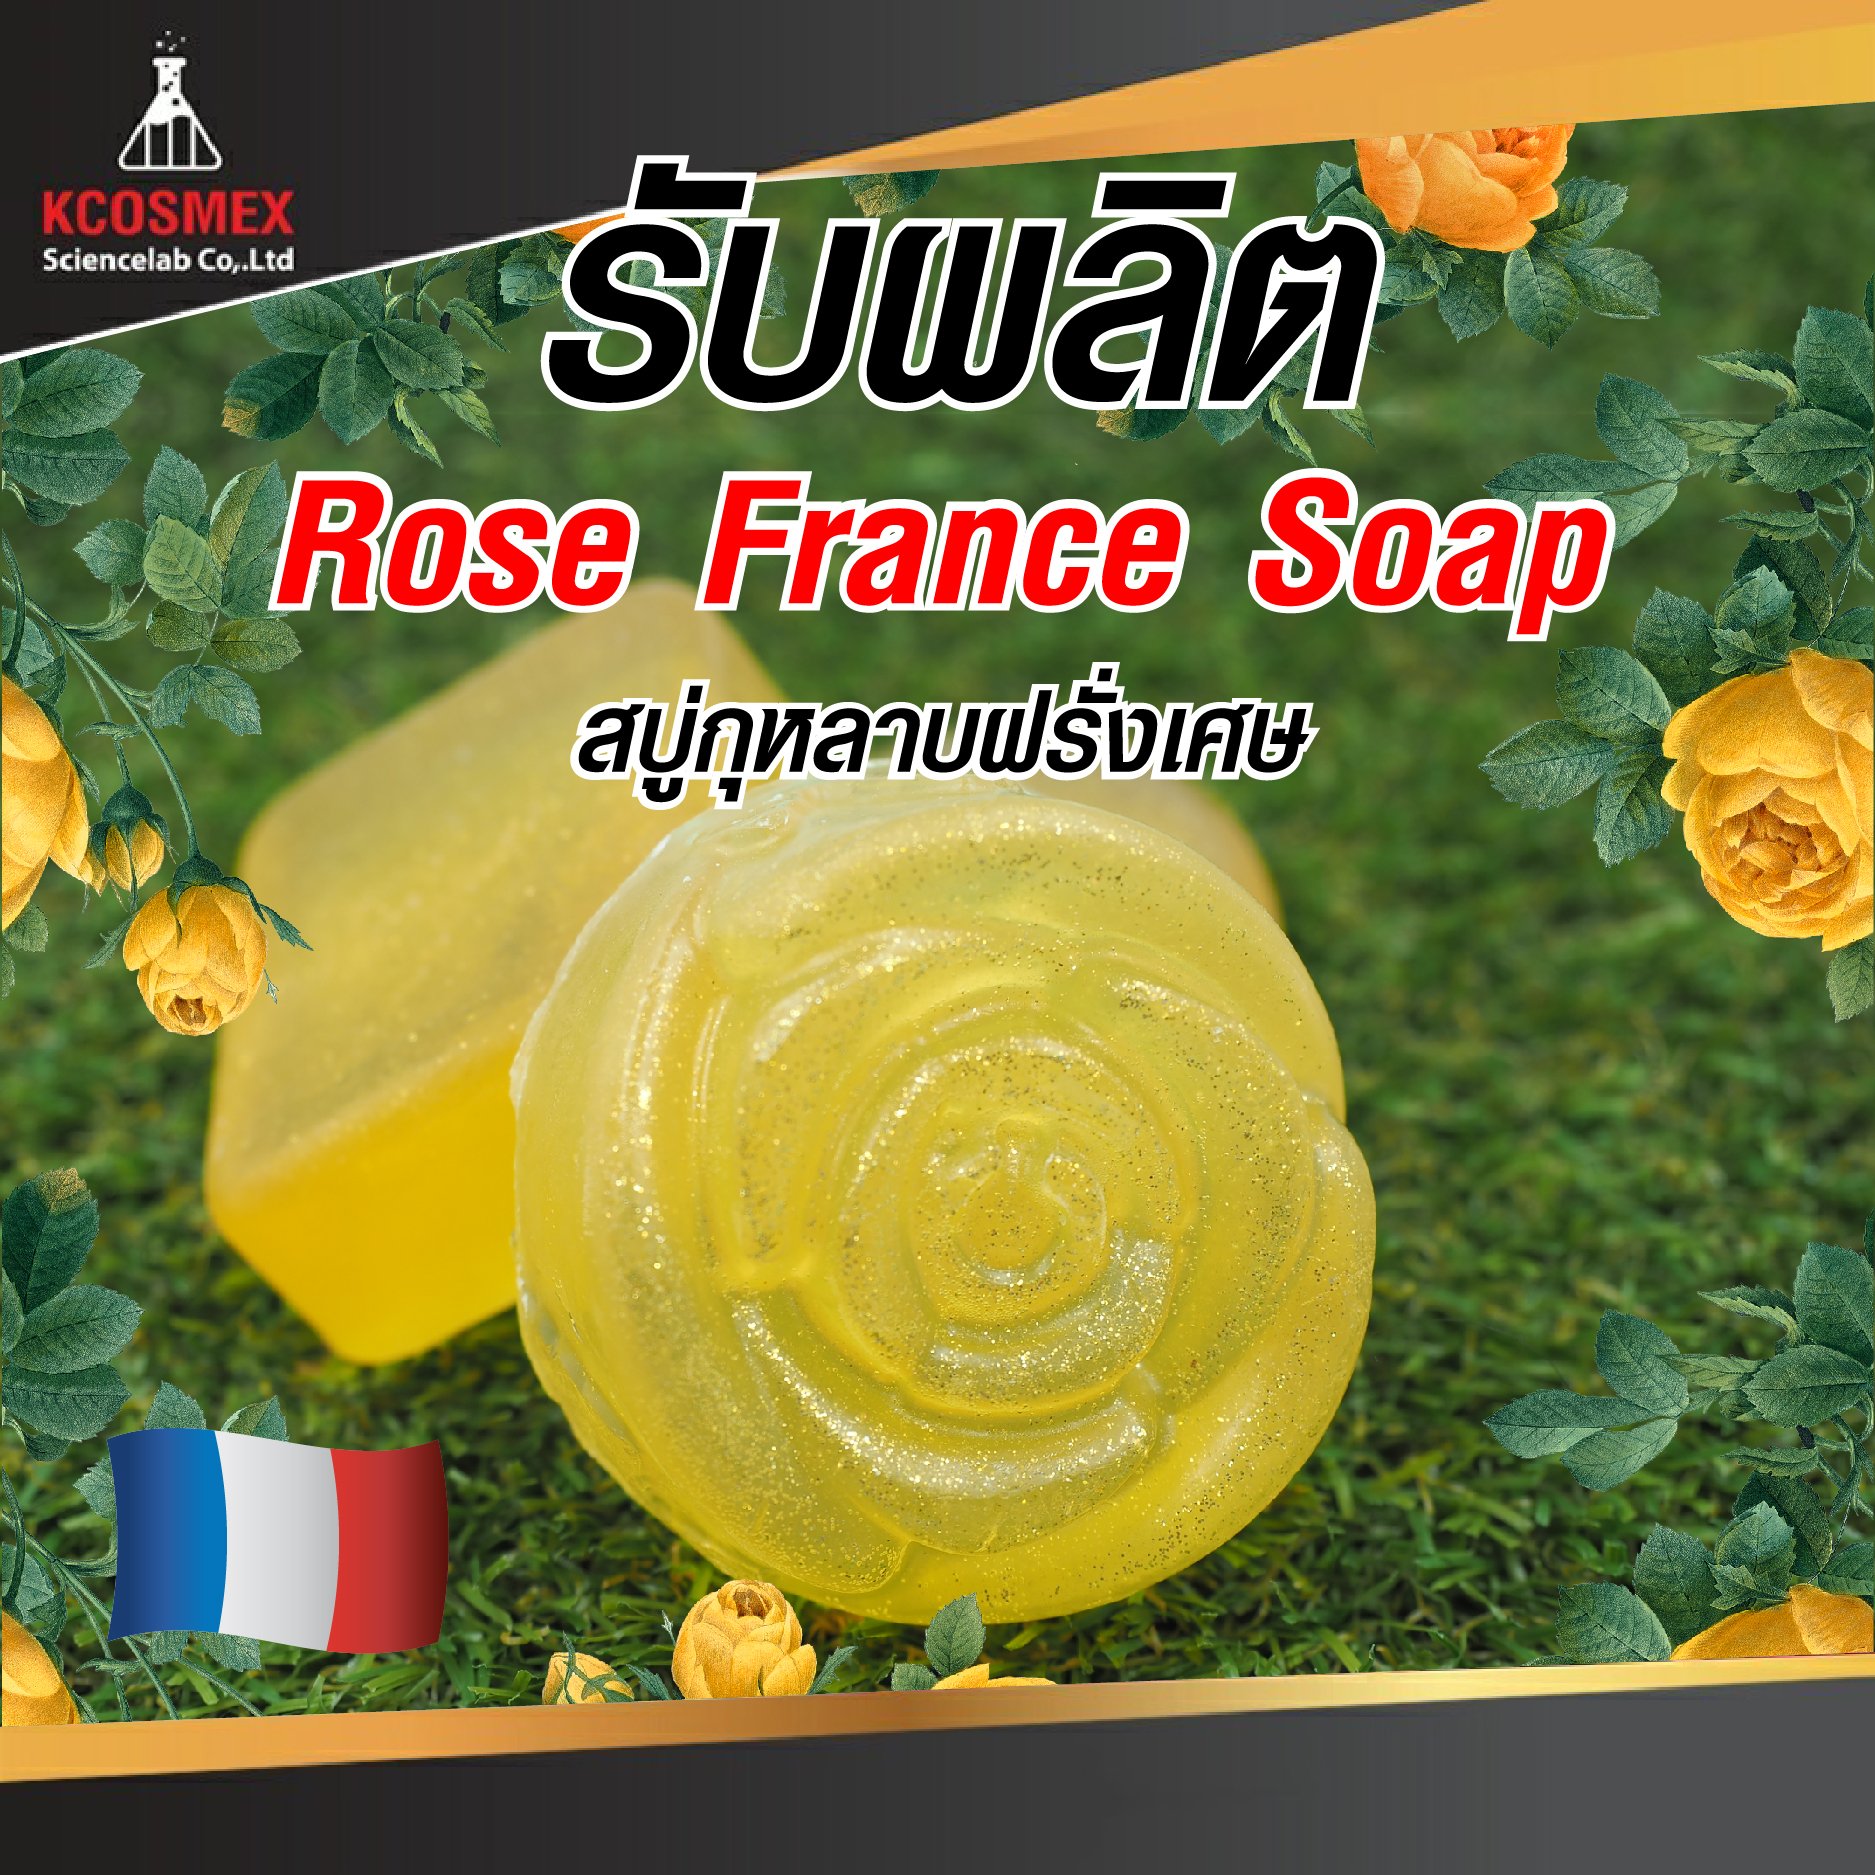 รับผลิต Rose France Soap